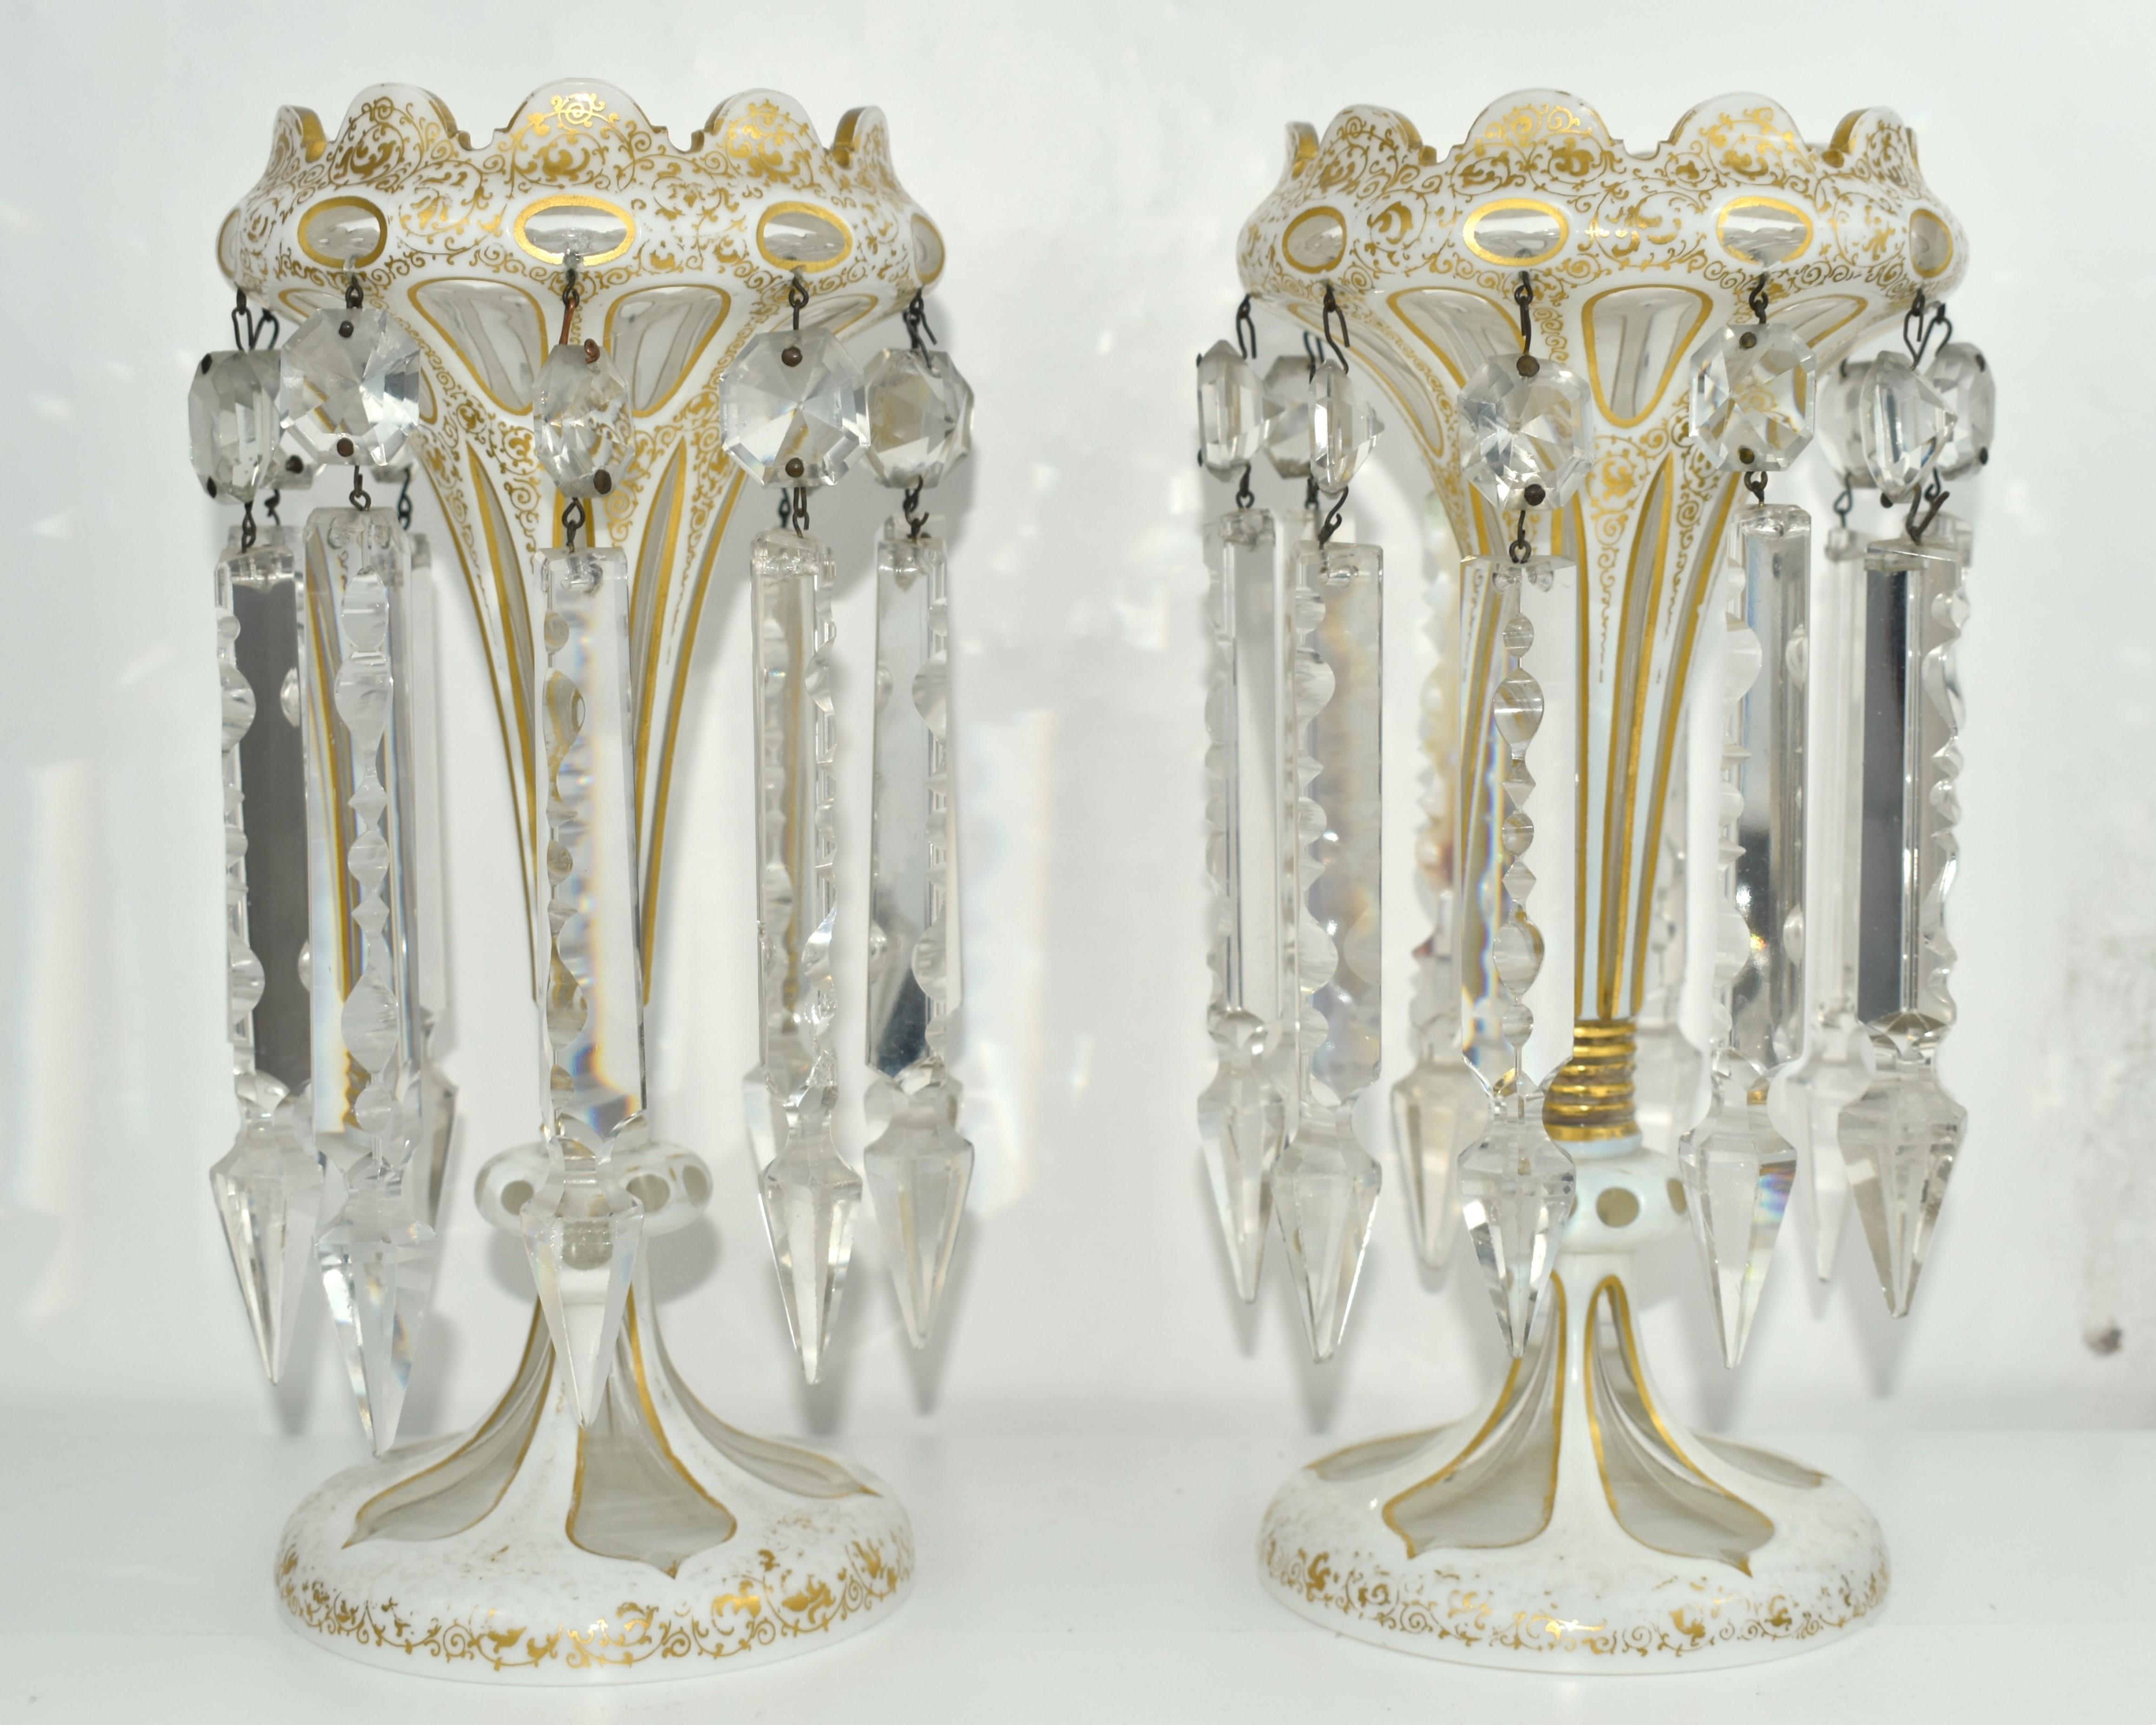 Fabriqué par les fabricants de verre d'art de Bohême du 19e siècle, cristal transparent avec une couche de verre opalin blanc.

Fabuleusement découpé et peint à la main sur tout le pourtour du corps, la couche blanche laiteuse est ornée de fines et